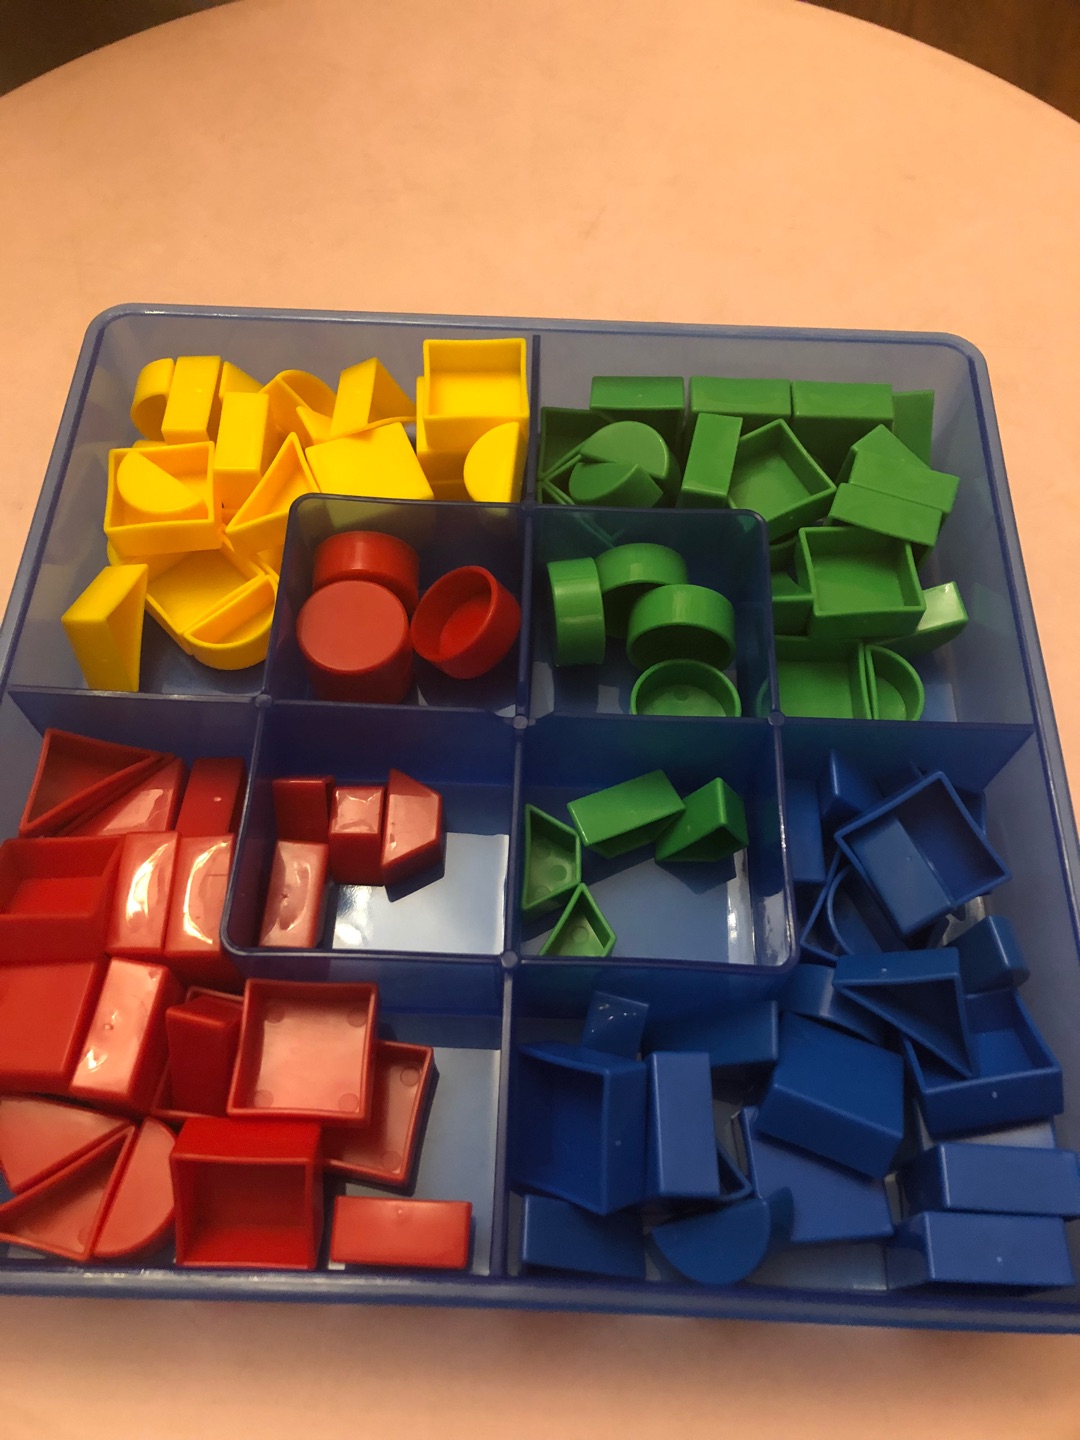 一箱里面有三种玩具，一种是积木那种，还有一种是透明的立体方块儿，还有两盒里面是各种小积木。配了一本指导用书，搞活动买的，性价比还是不错